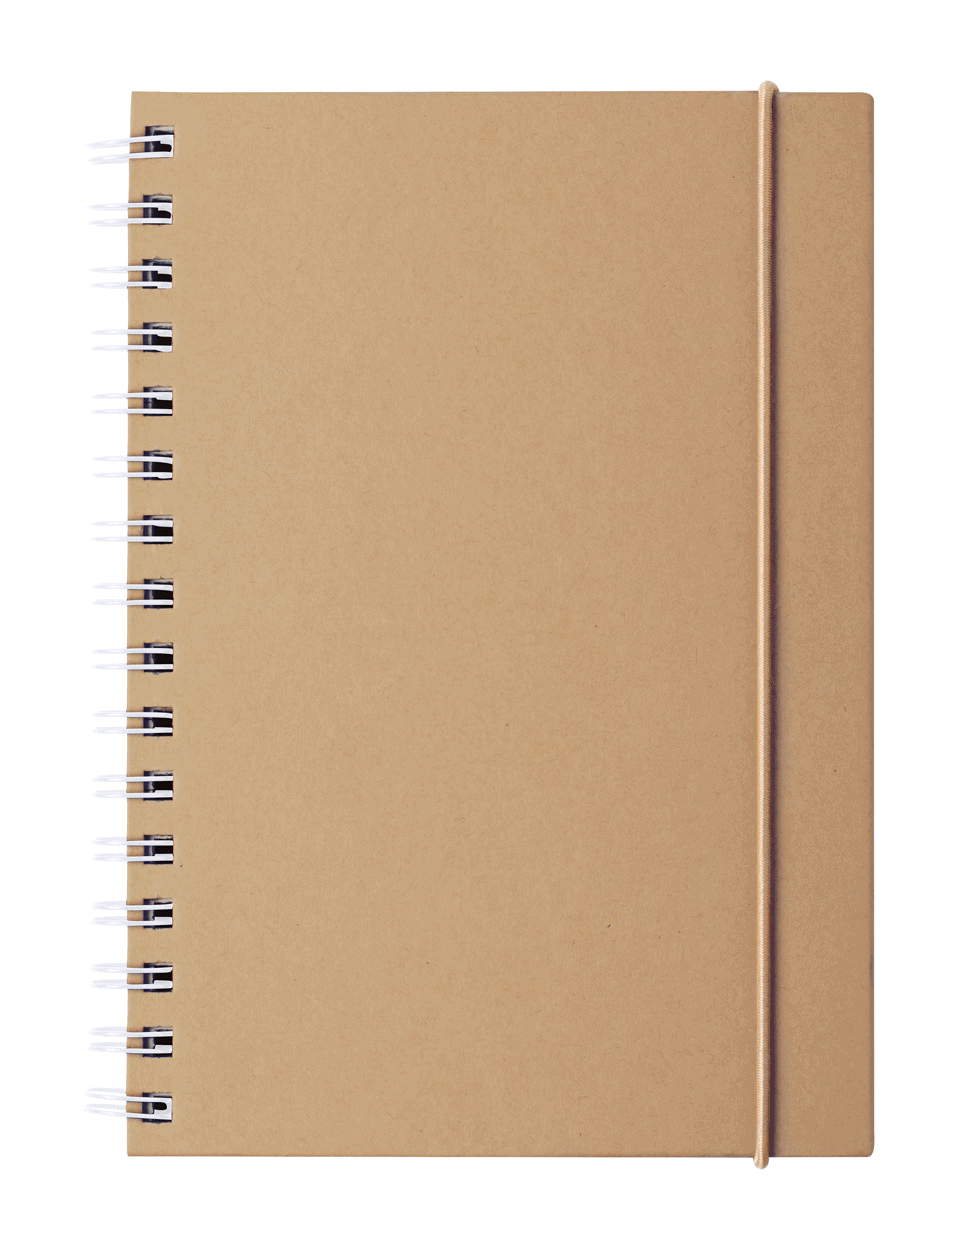 Notebooks Zubar notebook